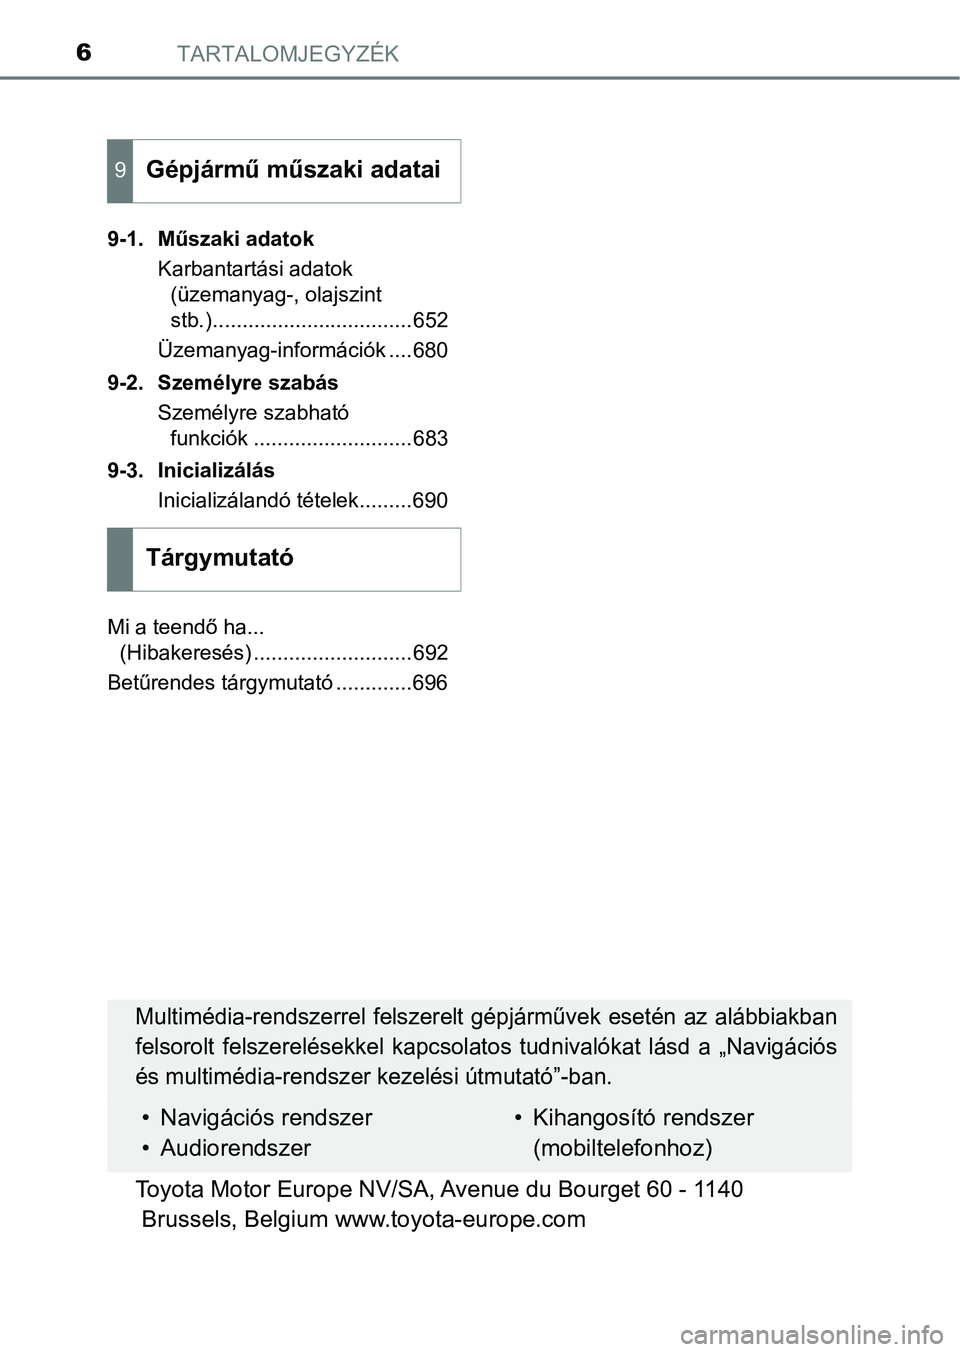 TOYOTA HILUX 2019  Kezelési útmutató (in Hungarian) TARTALOMJEGYZÉK6
9-1. Műszaki adatokKarbantartási adatok (üzemanyag-, olajszint 
stb.)..................................652
Üzemanyag-információk ....680
9-2. Személyre szabás Személyre szab